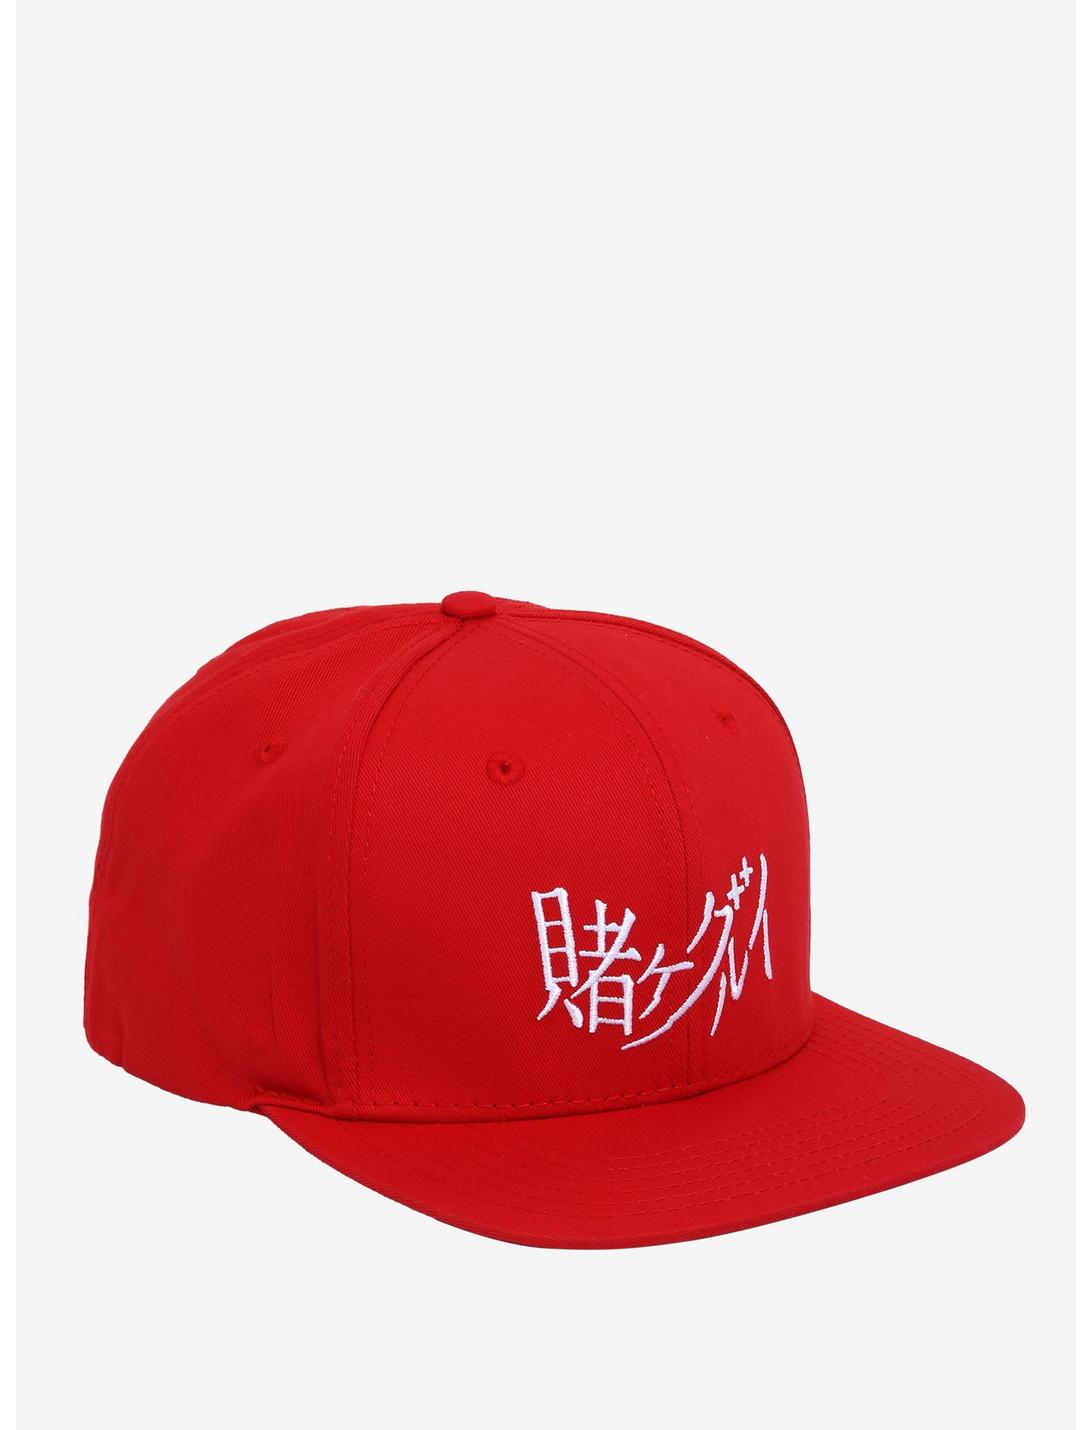 Kakegurui Red Snapback Hat, , hi-res